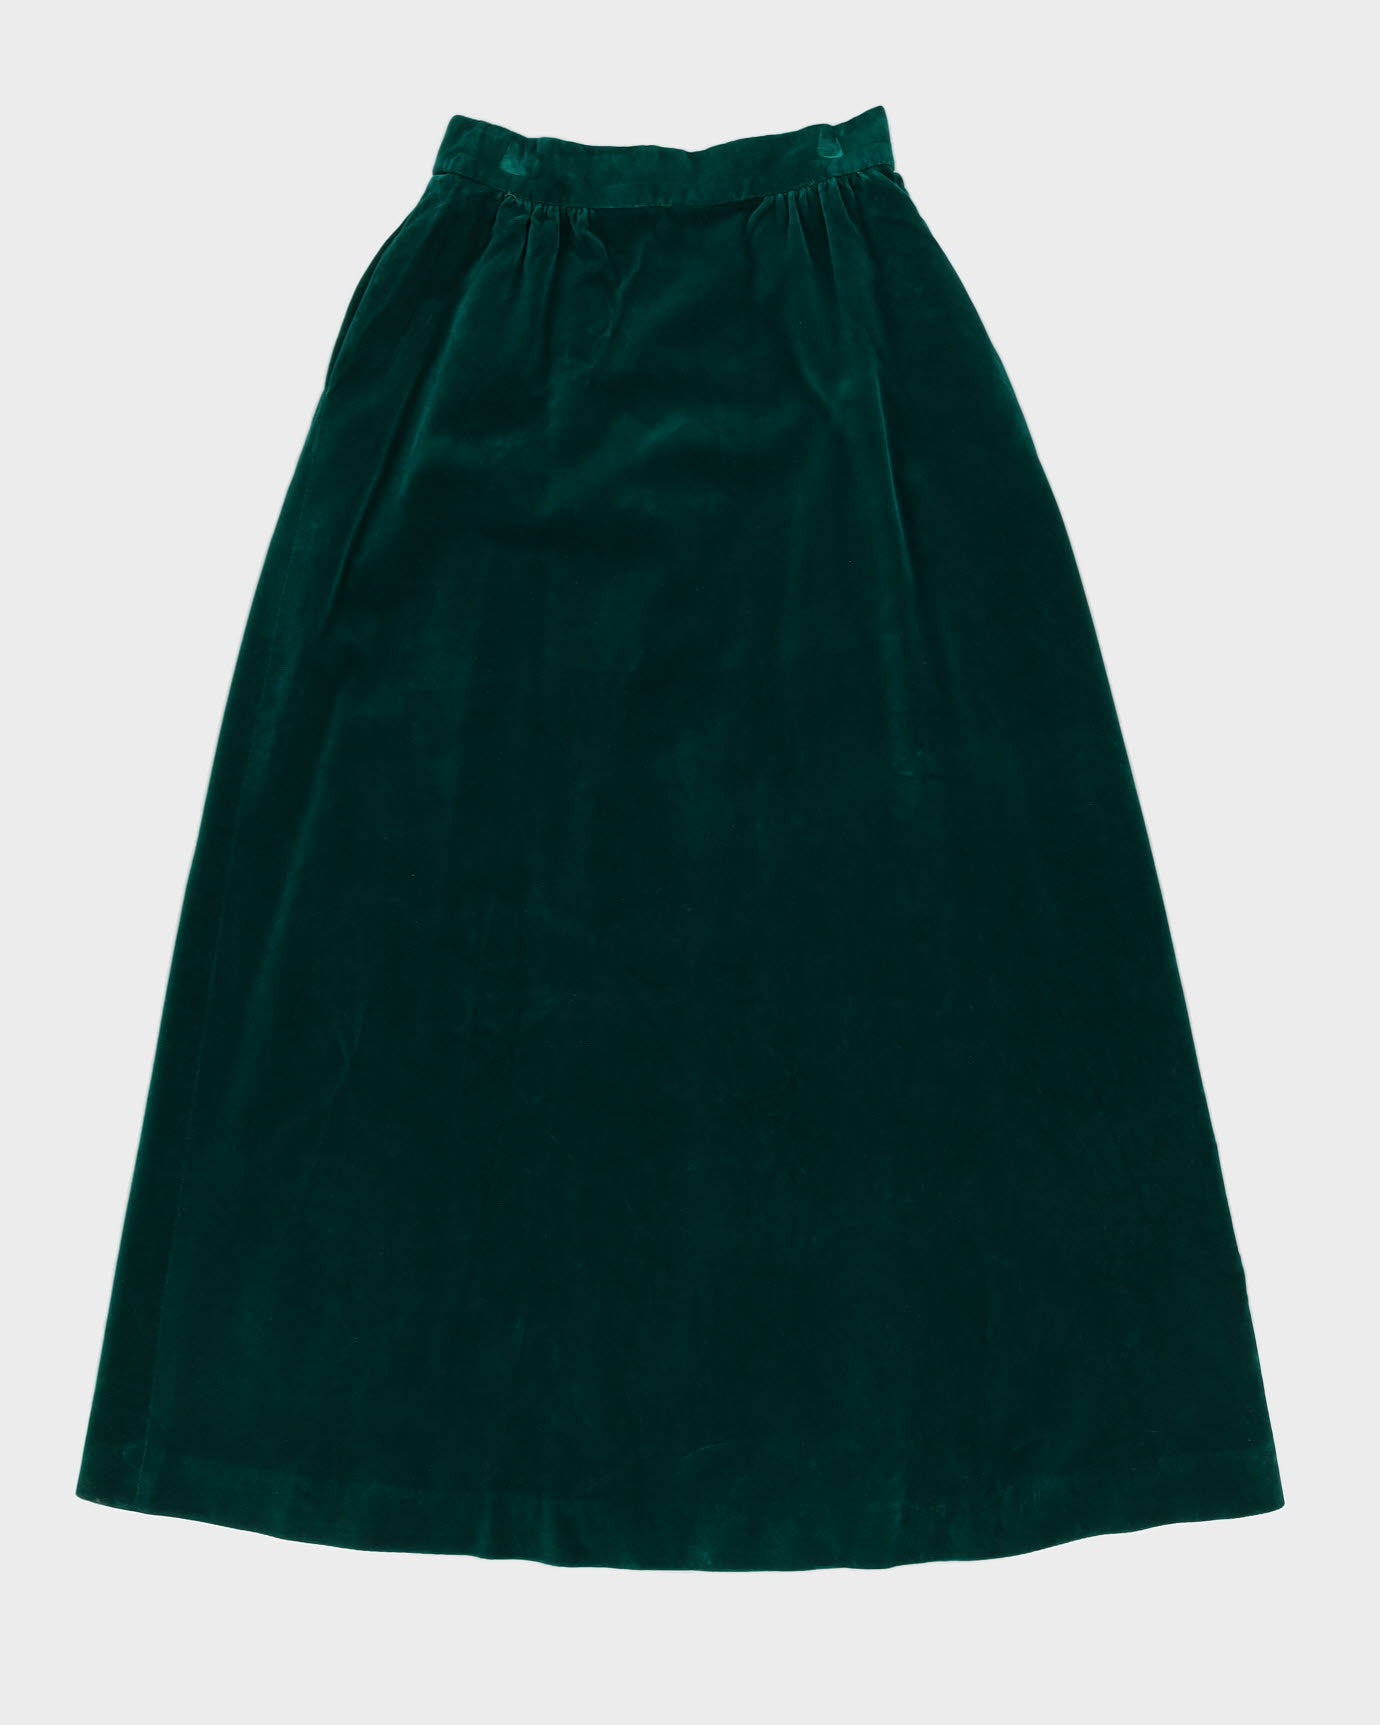 Vintage 1970s Green Velvet Maxi Skirt - S